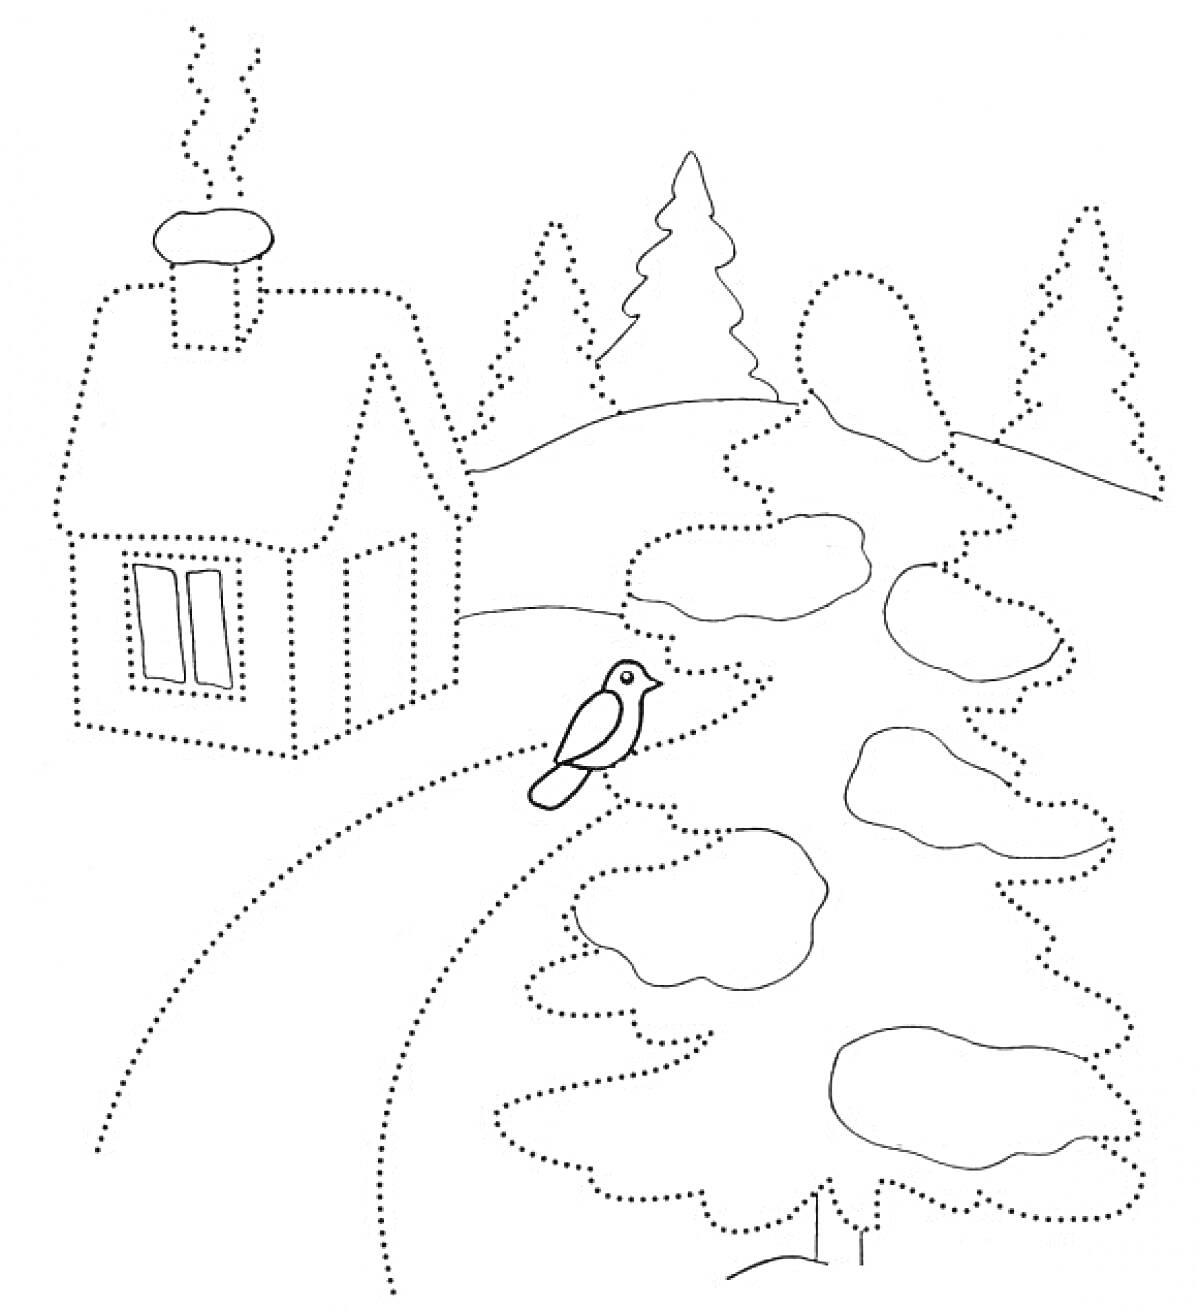 Домик, дерево, птица и снеговик на фоне зимнего пейзажа